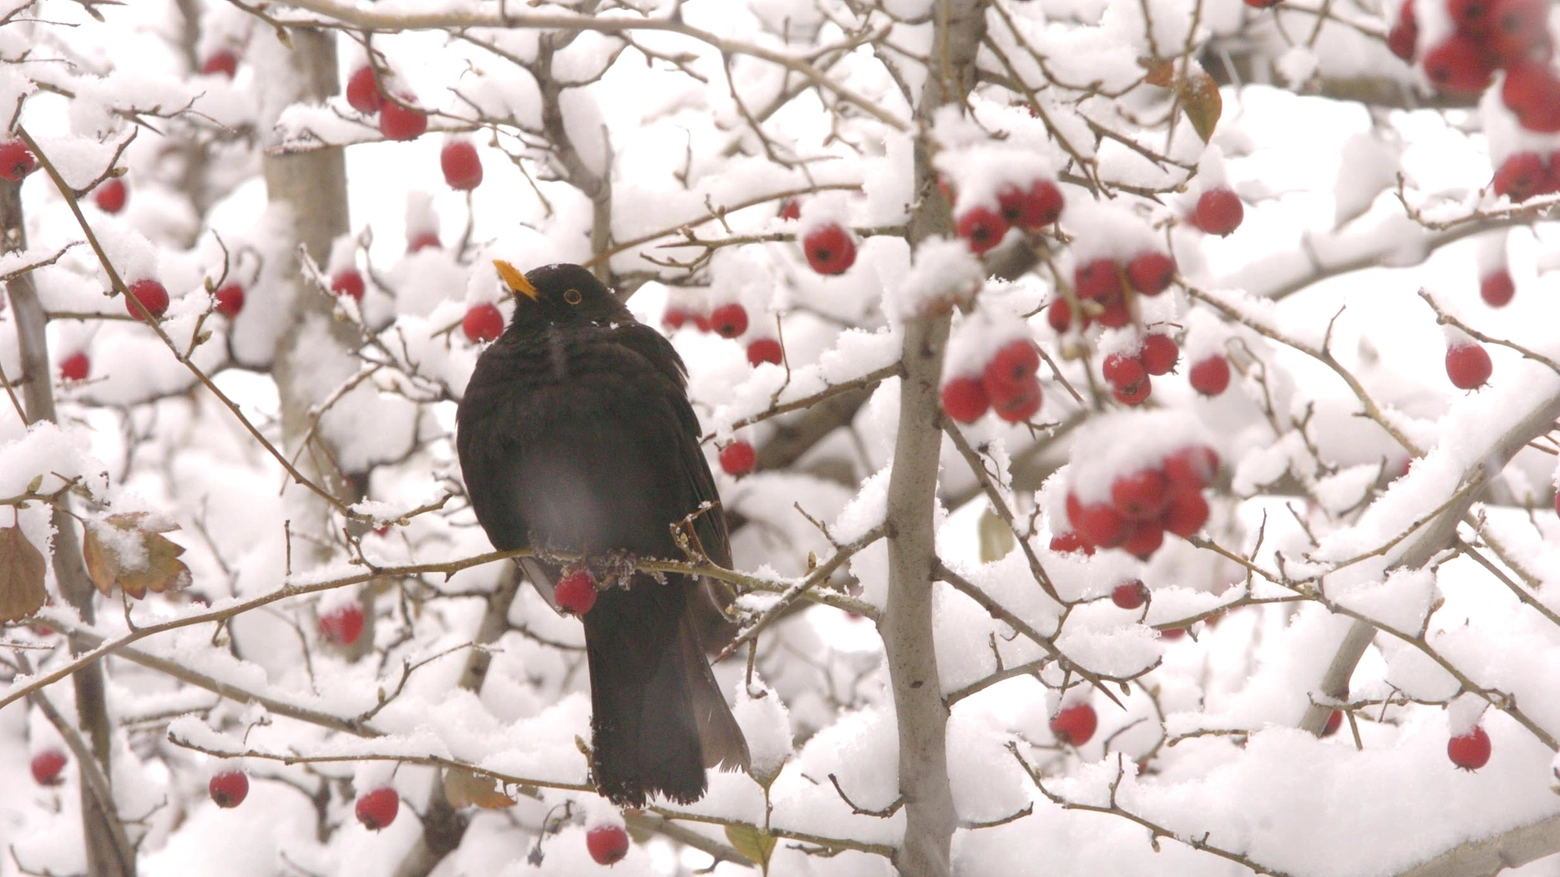 Un merlo tra la neve di un albero (Newpress)